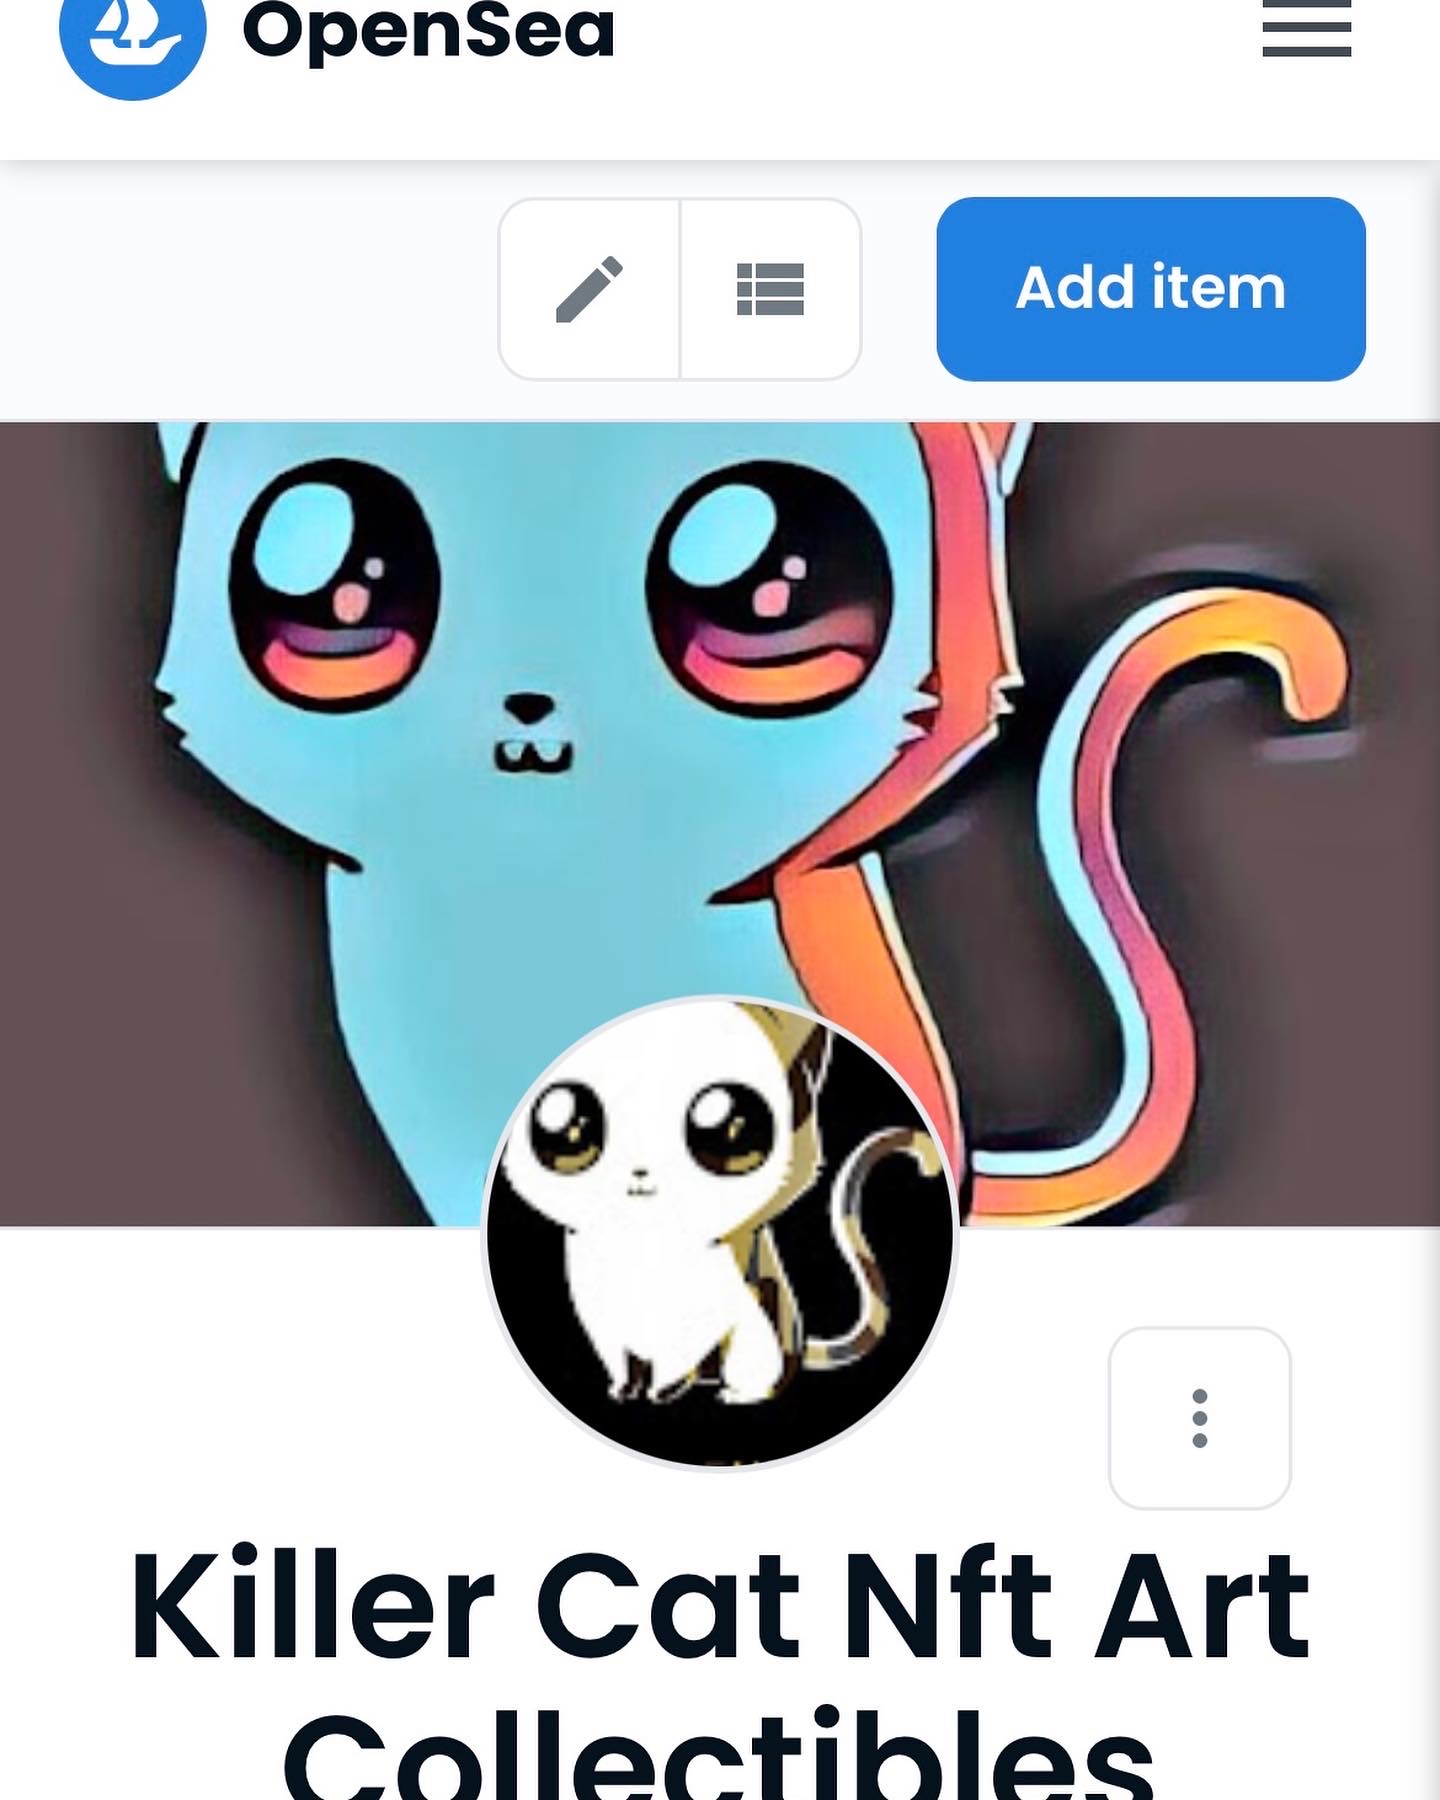 Killer Cats NFT Art Collectibles